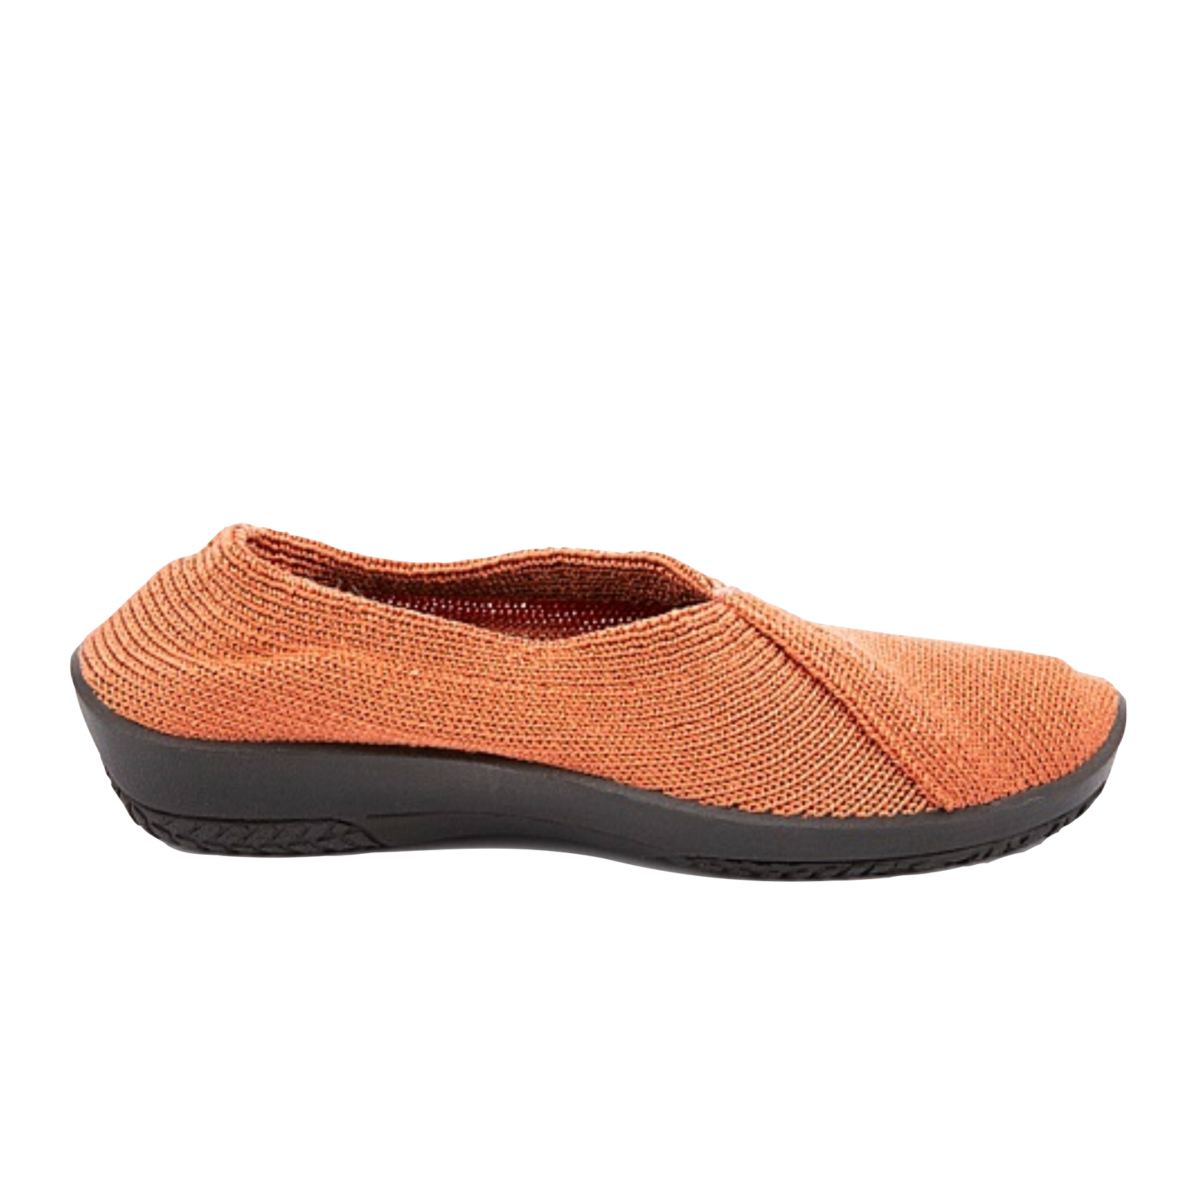 Mailu - shoe&me - Arcopedico - Shoe - Shoes, Womens